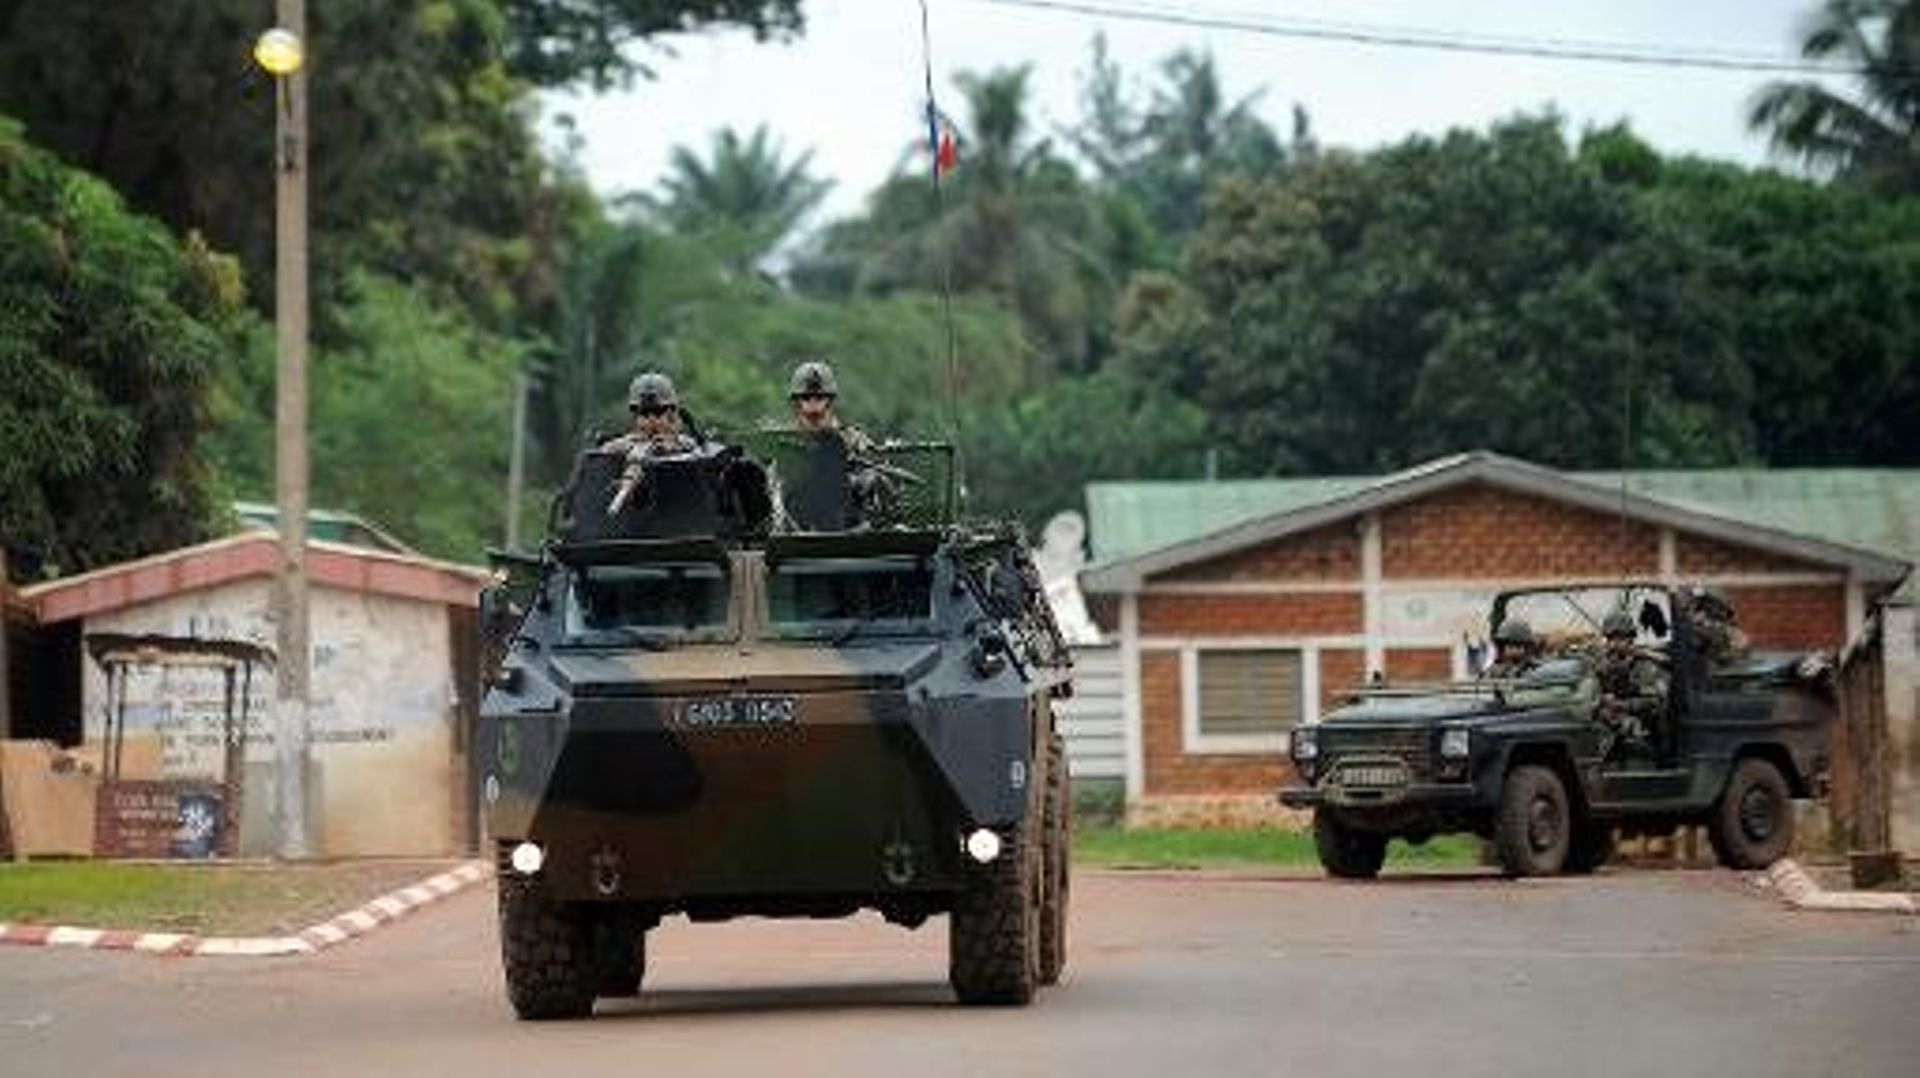 Des soldats français en patrouille à Bangui, le 6 décembre 2013 en Centrafrique